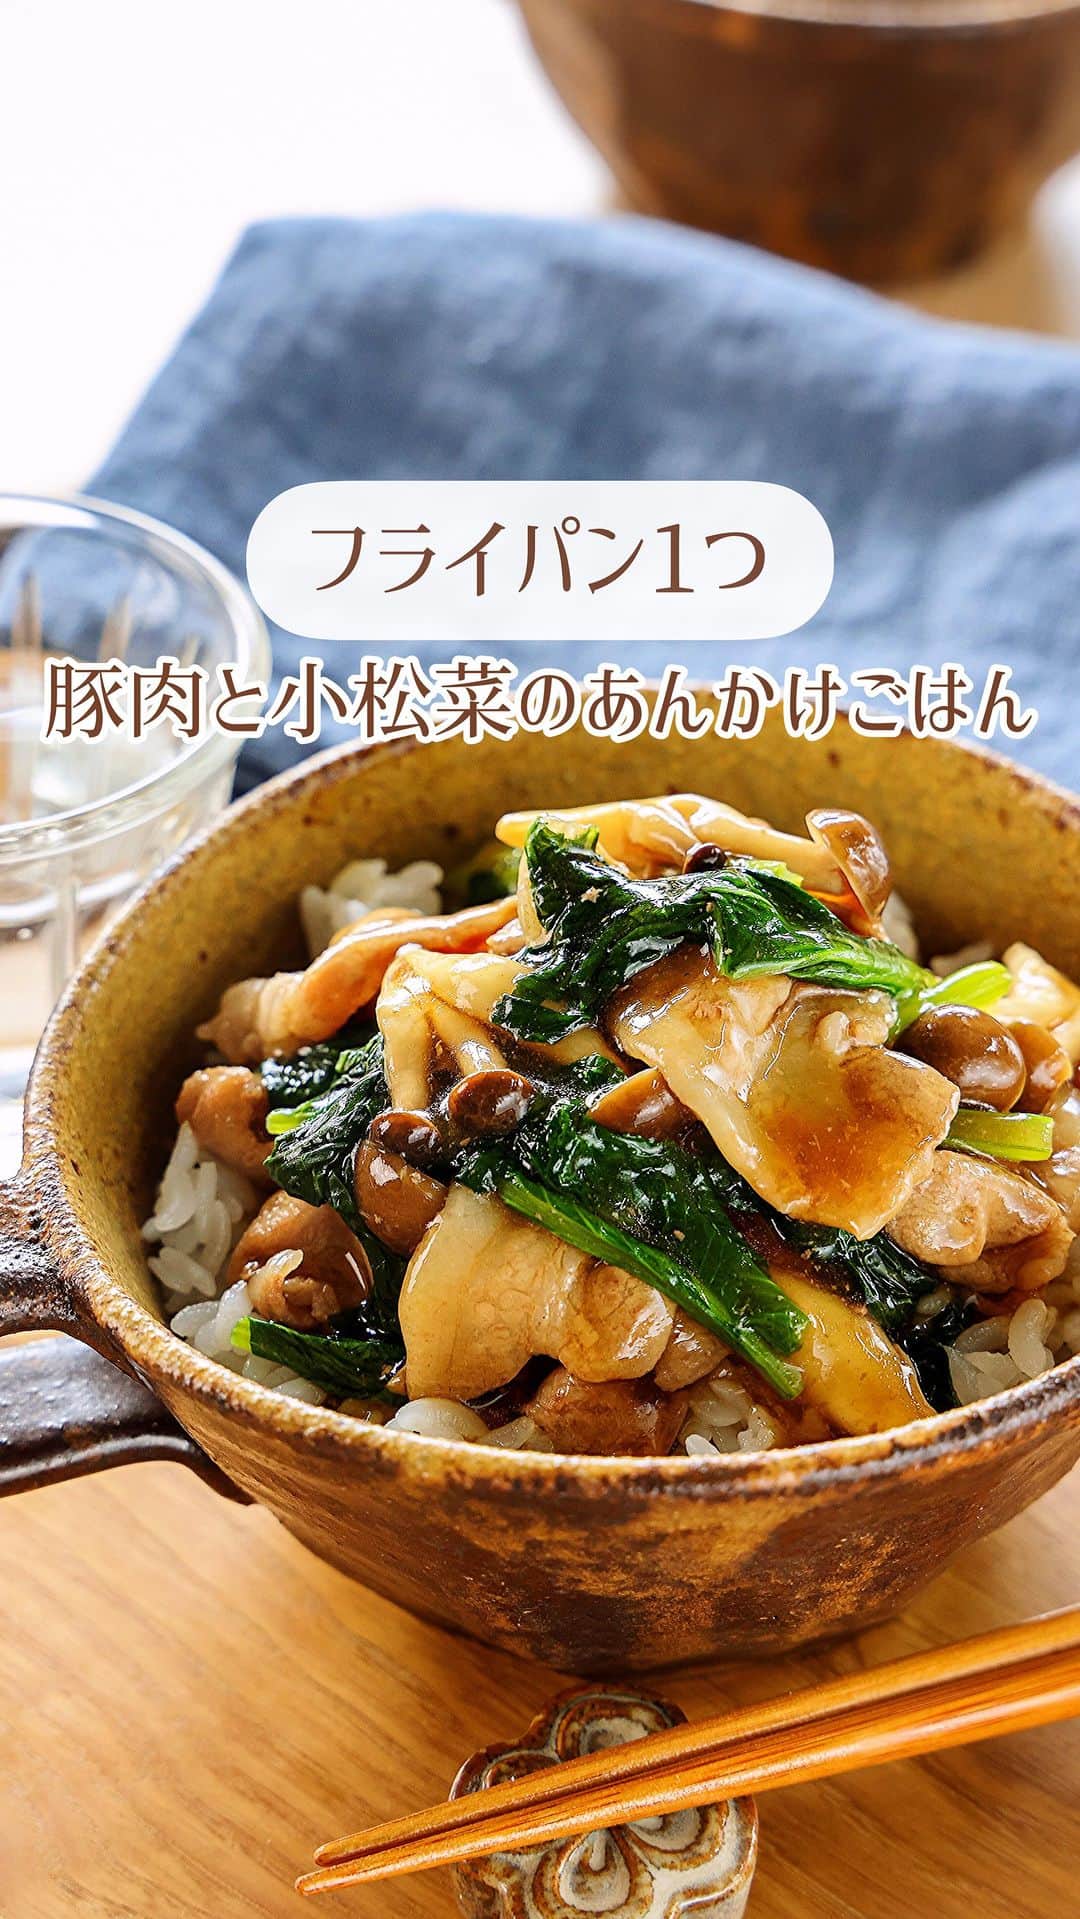 Mizuki【料理ブロガー・簡単レシピ】のインスタグラム：「・合わせ調味料で失敗なし💕 ⁡ ［#レシピ ］ ーーーーーーーーーーーーーーーーーーーー すぐでき！豚肉と小松菜のあんかけごはん ーーーーーーーーーーーーーーーーーーーー ⁡ ⁡ ⁡ おはようございます☺️ ⁡ 今日ご紹介させていただくのは \ 豚肉と小松菜のあんかけごはん / ⁡ 味付けもとろみ付けも 合わせ調味料で失敗なし💕 フライパン1つですぐできる 超簡単レシピです😋 ⁡ しっかり味でごはんに合うので よかったらお試しくださいね✨ ⁡ ⁡ ⁡ ⋱⋰ ⋱⋰ ⋱⋰ ⋱⋰ ⋱⋰ ⋱⋰ ⋱⋰ 📍簡単・時短・節約レシピ更新中  Threadsもこちらから▼ @mizuki_31cafe ⁡ 📍謎の暮らし＆変なライブ垢 @mizuki_kurashi ⋱⋰ ⋱⋰ ⋱⋰ ⋱⋰ ⋱⋰ ⋱⋰ ⋱⋰ ⁡ ⁡ ⁡ ＿＿＿＿＿＿＿＿＿＿＿＿＿＿＿＿＿＿＿ 【2人分】 豚こま切れ肉...150g 小松菜...1/2袋(100g) しめじ...1/2袋 ごま油...小1 ⚫︎水...200ml ⚫︎醤油・みりん・片栗粉...各大1 ⚫︎オイスターソース...大1/2 ⚫︎鶏がらスープ...小1/4 ごはん...適量 ⁡ 1.小松菜は4cm長さに切る。しめじはほぐす。⚫︎は合わせておく。 2.フライパンにごま油を中火で熱して豚肉を炒め、色が変わったら小松菜としめじも加えて更に炒める。 3.野菜がしんなりしたら⚫︎を加え、混ぜながらとろみが付くまで加熱し、ごはんにかける。 ￣￣￣￣￣￣￣￣￣￣￣￣￣￣￣￣￣￣￣ ⁡ ⁡ 《ポイント》 ♦︎合わせ調味料はよく混ぜてから加え、混ぜながらとろみが付くまで加熱してください♩ ♦︎豚こまの代わりに豚ばら薄切り肉を使用しても♩ ⁡ ⁡ ⁡ ⁡ ⁡ ⁡ ⋱⋰ ⋱⋰ ⋱⋰ ⋱⋰ ⋱⋰ ⋱⋰ ⋱⋰  愛用している調理器具・器など   #楽天ROOMに載せてます ‎𐩢𐩺  (ハイライトから飛べます🕊️) ⋱⋰ ⋱⋰ ⋱⋰ ⋱⋰ ⋱⋰ ⋱⋰ ⋱⋰ ⁡ ⁡ ⁡ ⁡ ⁡ ✼••┈┈┈┈┈••✼••┈┈┈┈┈••✼ 今日のごはんこれに決まり！ ‎𓊆#Mizukiのレシピノート 500品𓊇 ✼••┈┈┈┈┈••✼••┈┈┈┈┈••✼ ⁡ ˗ˏˋ おかげさまで25万部突破 ˎˊ˗ 料理レシピ本大賞準大賞を受賞しました✨ ⁡ 6000点の中からレシピを厳選し まさかの【500レシピ掲載】 肉や魚のメインおかずはもちろん 副菜、丼、麺、スープ、お菓子 ハレの日のレシピ、鍋のレシピまで 全てこの一冊で完結 𓌉◯𓇋 (全国の書店・ネット書店で発売中) ⁡ ⁡ ⁡ ⁡ ⁡ ⁡ #あんかけごはん #小松菜 #小松菜レシピ #豚肉レシピ #丼 #ランチ #節約料理  #簡単料理  #時短料理 #mizukiレシピ  #時短レシピ #節約レシピ #簡単レシピ」